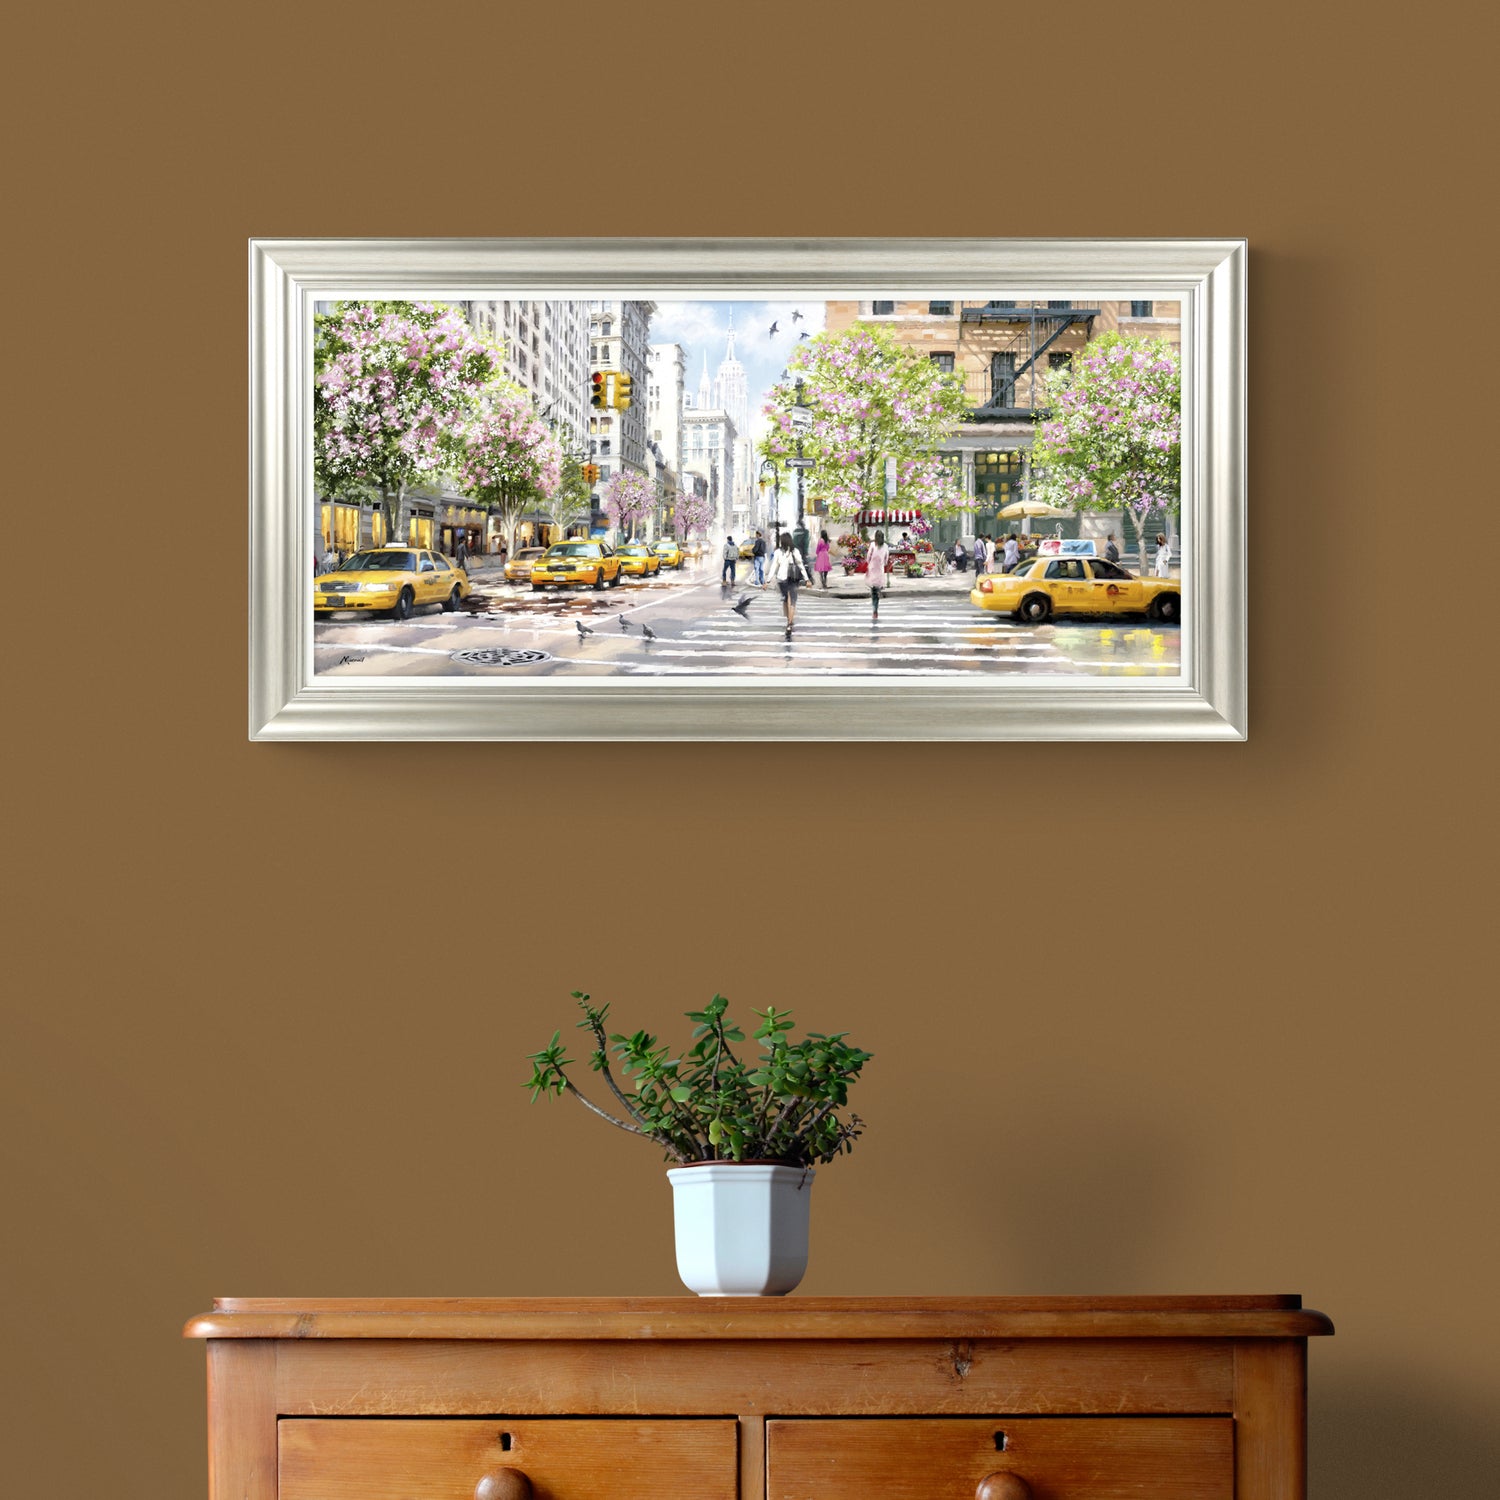 New York Spring framed print by Macneil